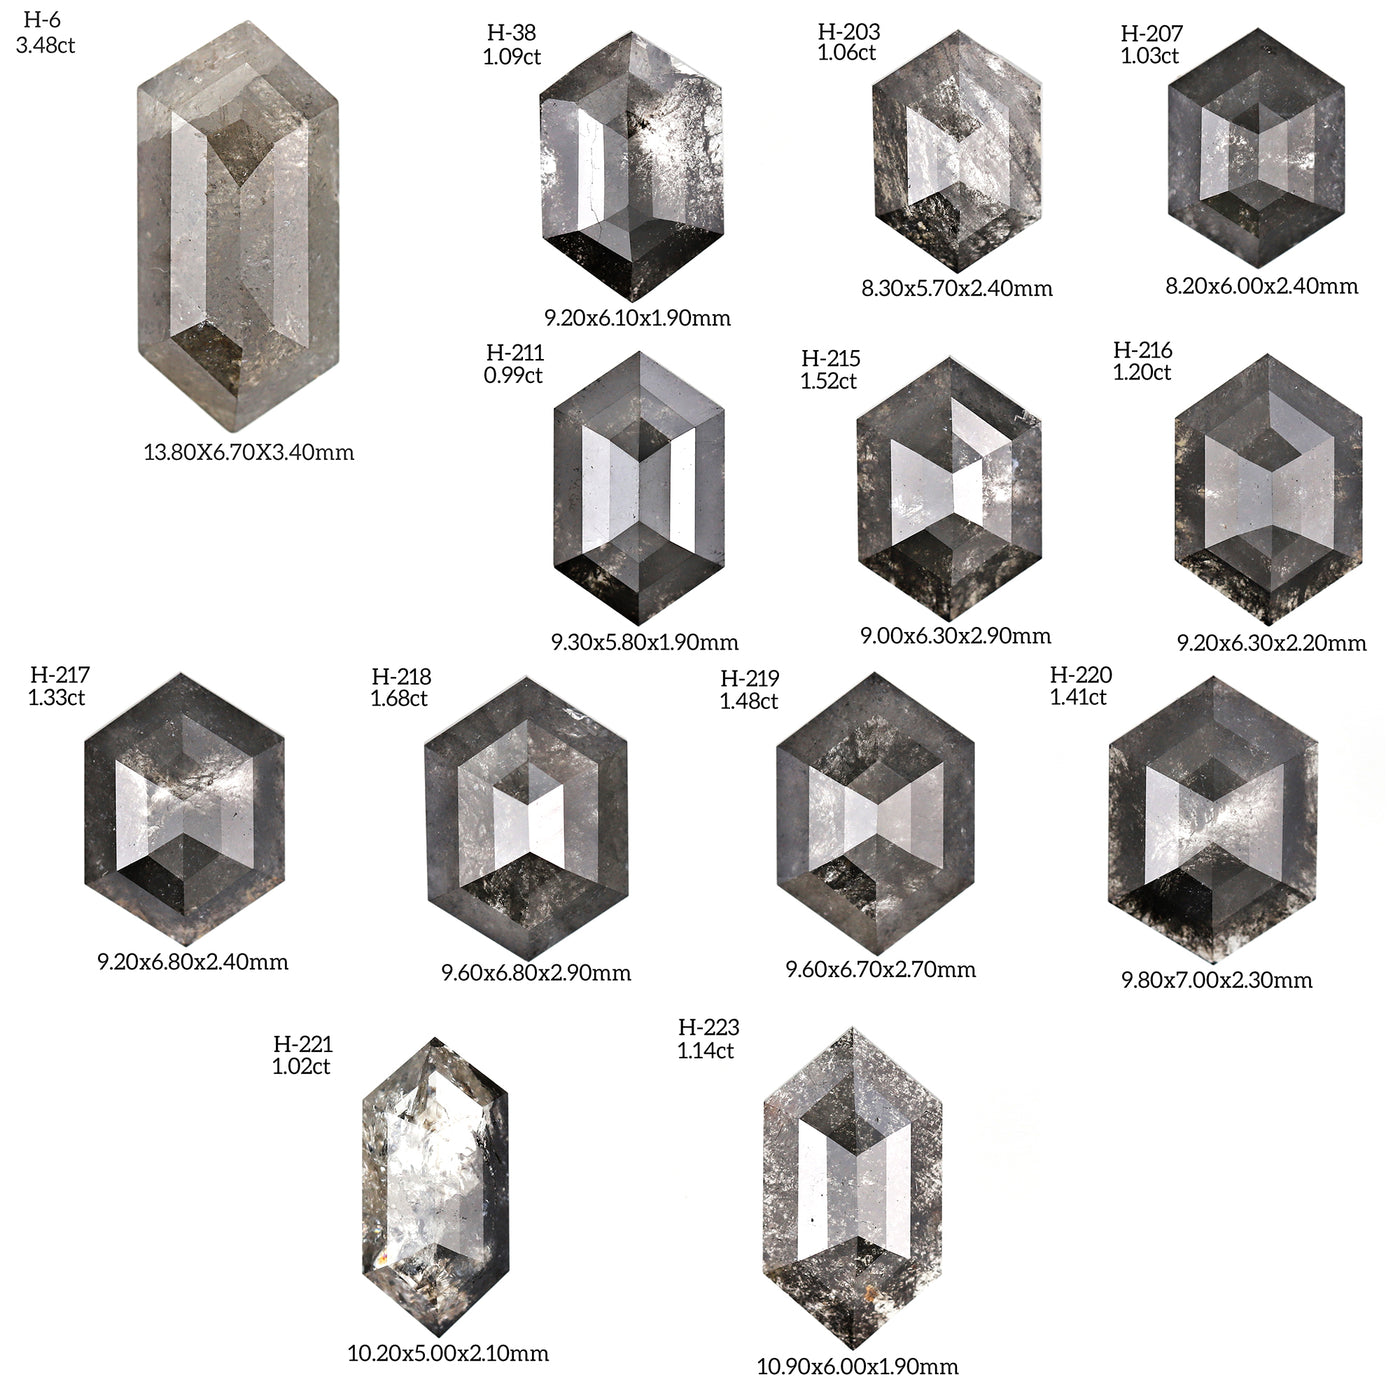 H217 - Salt and pepper hexagon diamond